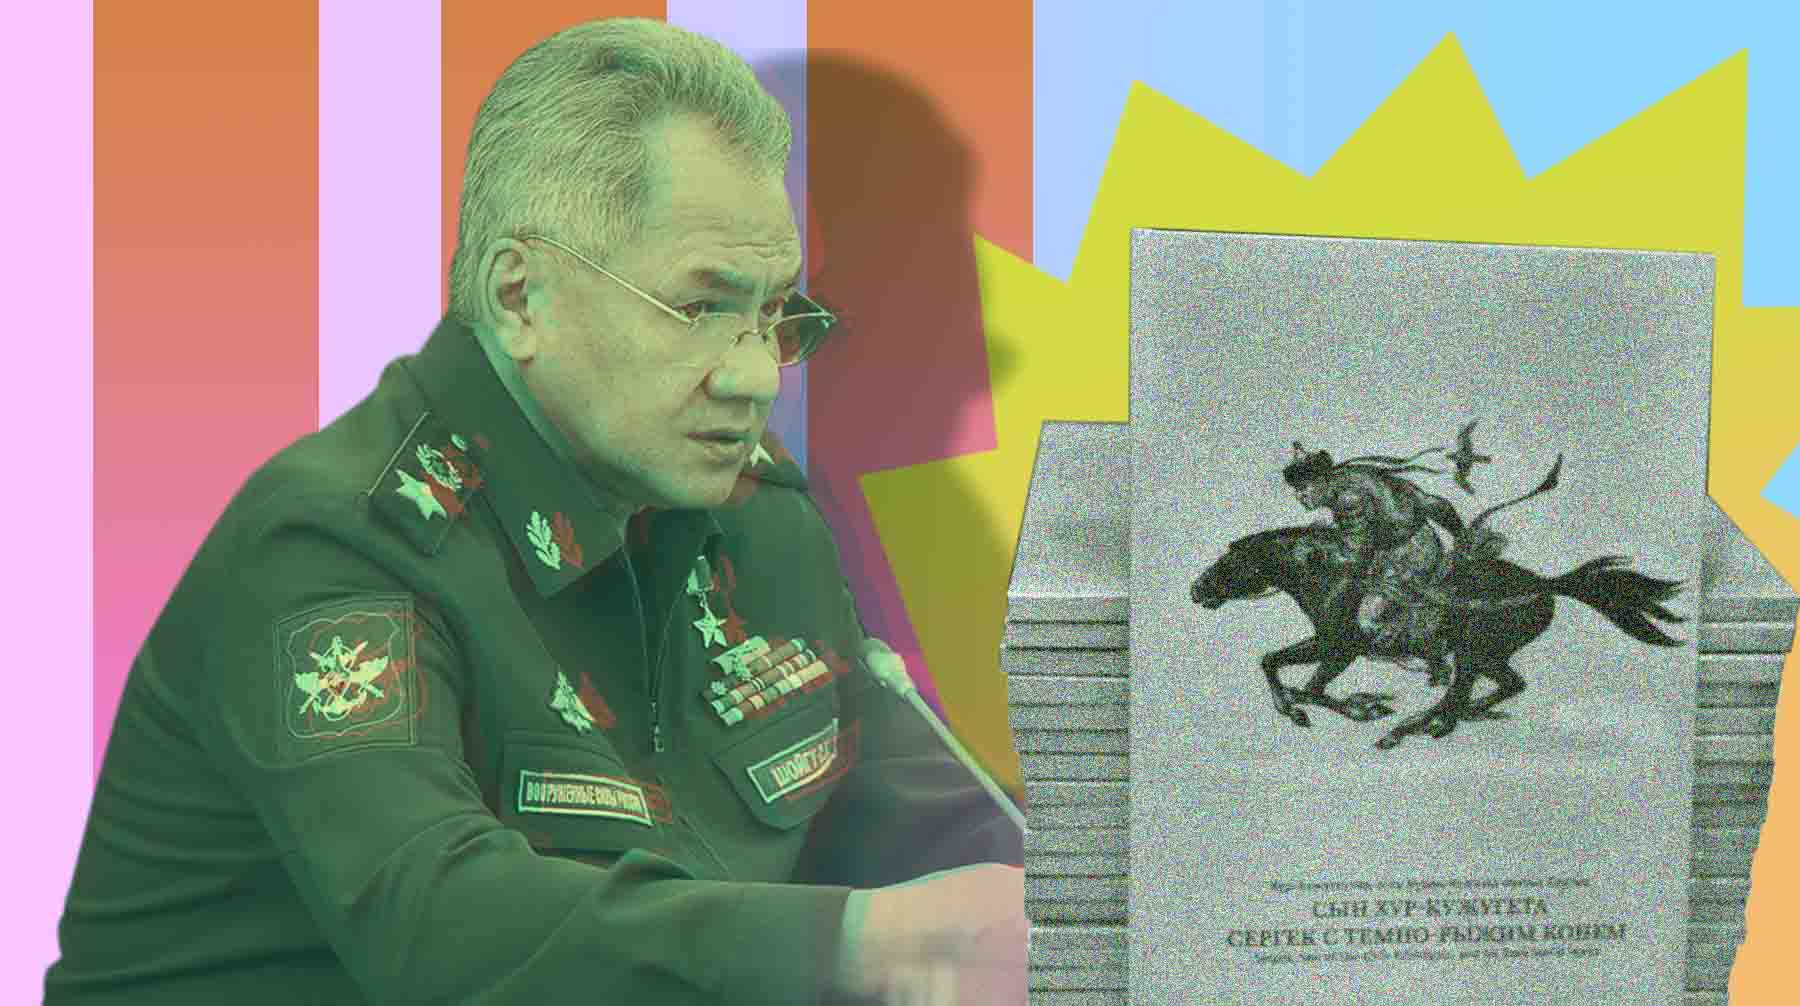 Как министр обороны РФ стал героем эпоса «Сын Хур-Кужугета Сергек с темно-рыжим конем» Коллаж: © Daily Storm